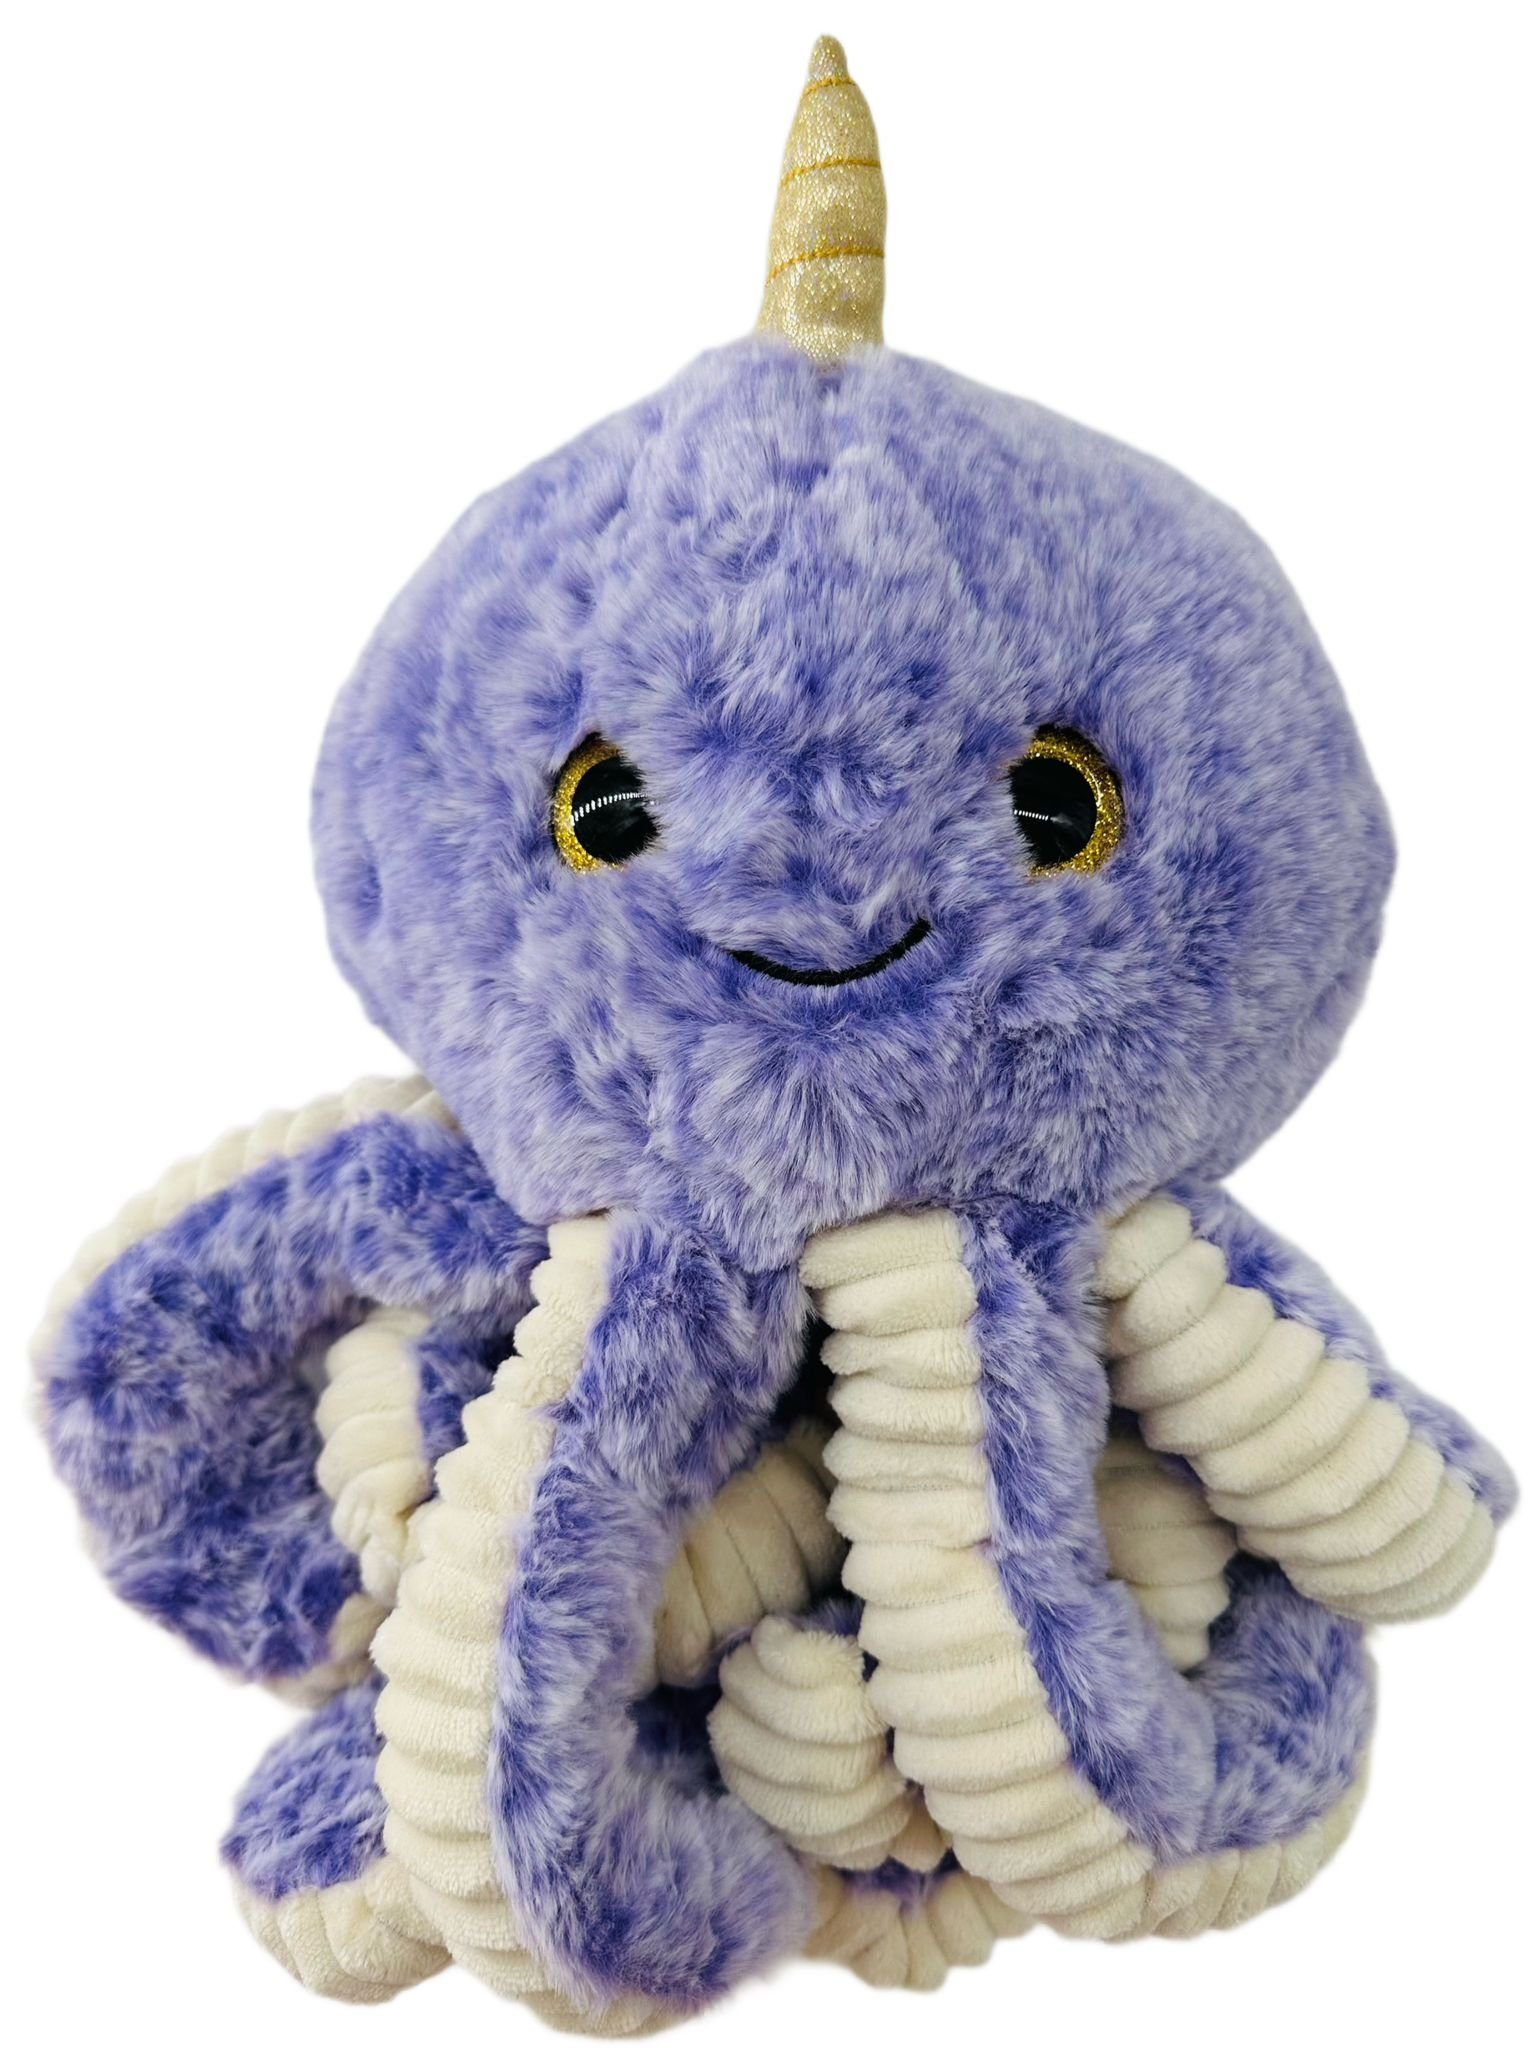 soma Kuscheltier Krake Plüsch Spielzeug Octopus Kuscheltier Cartoon Oktopus Lila 30 cm (1-St), Super weicher Plüsch Stofftier Kuscheltier für Kinder zum spielen